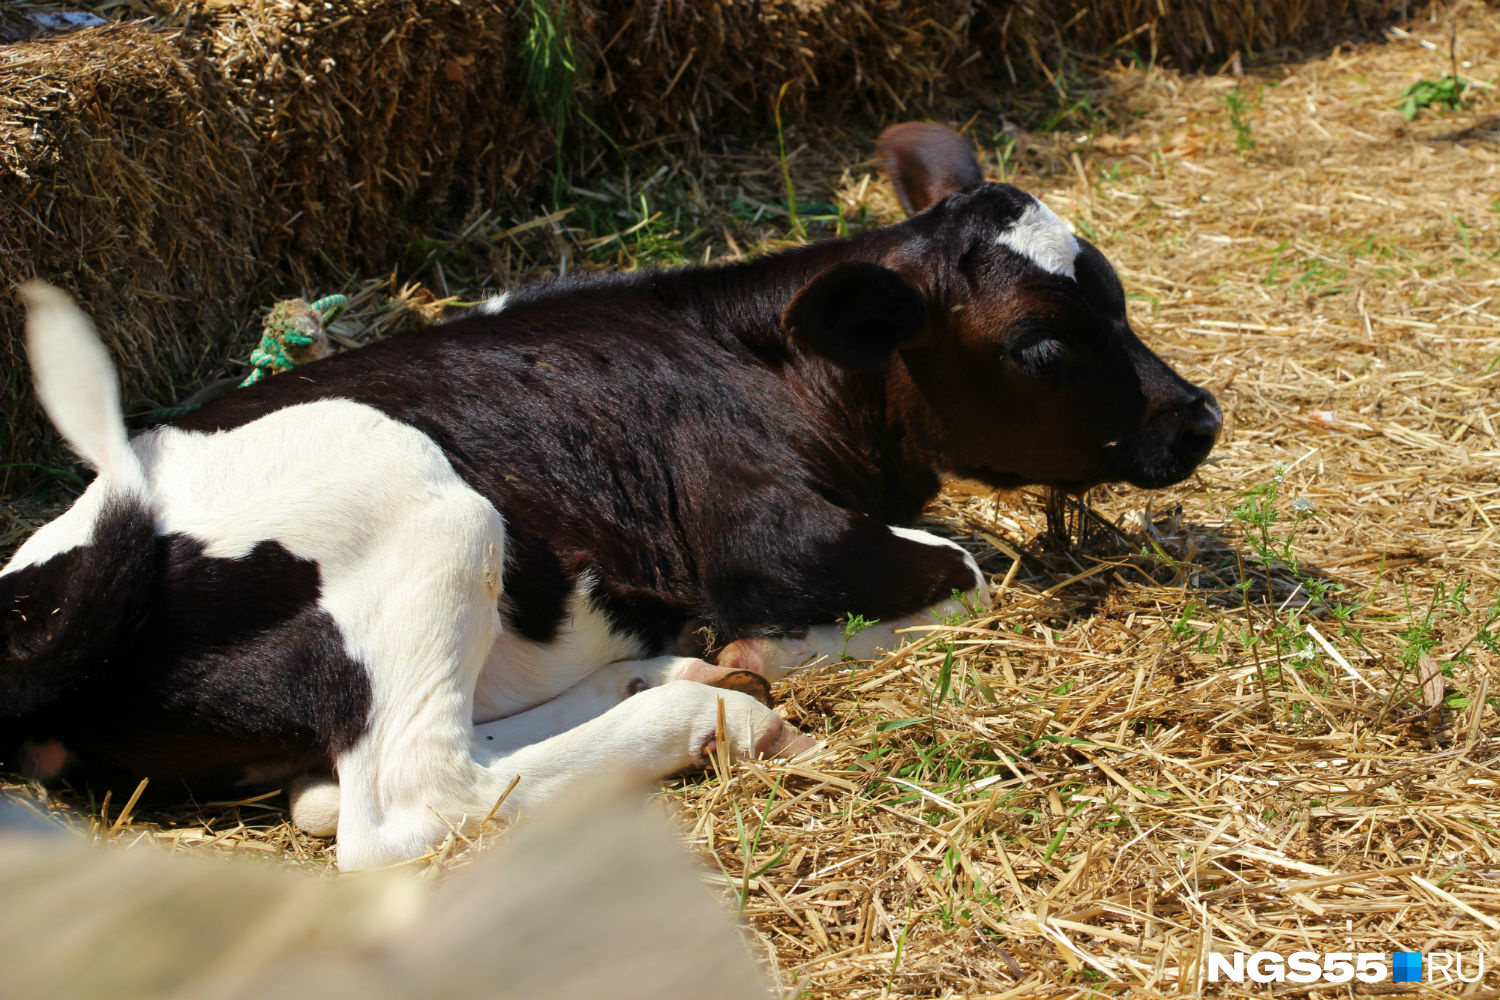 Телёнок родился от очень молодой коровы, за которой прежние хозяева плохо ухаживали, поэтому Широмани меньше других, на ферме её ласково зовут телёнок-котёнок